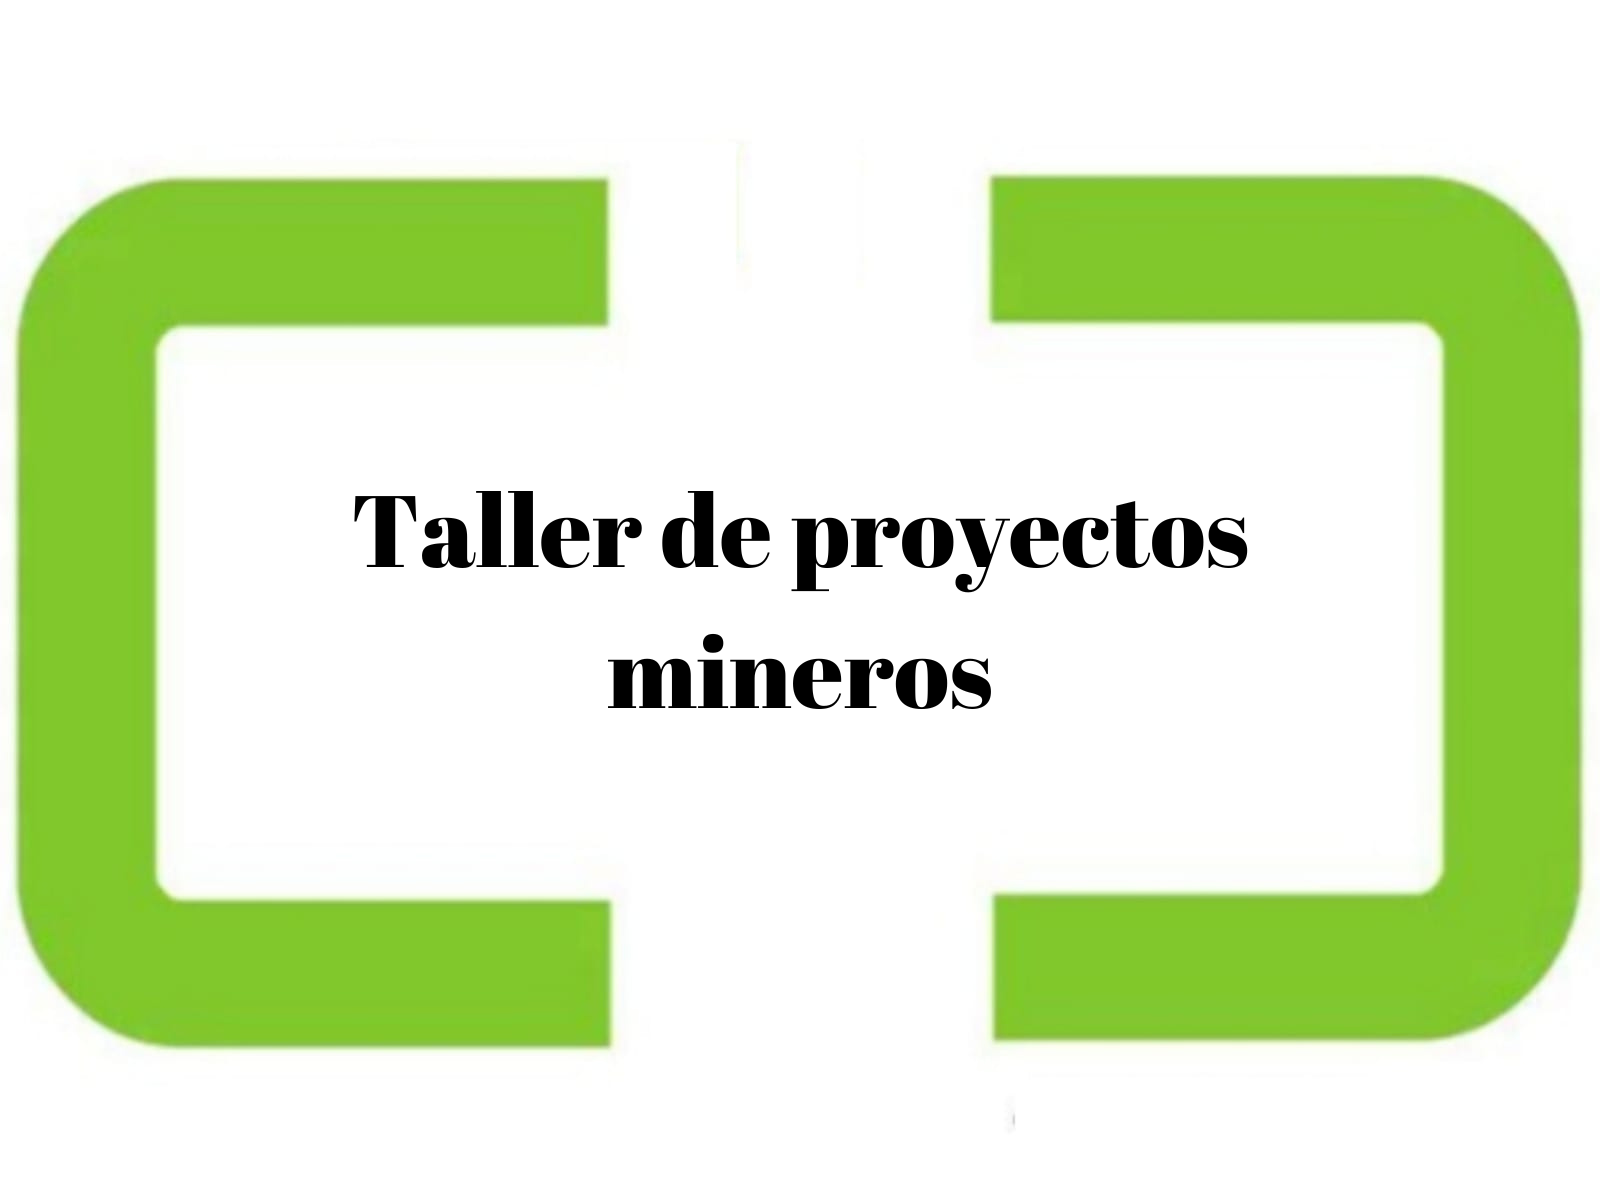 Taller de proyectos mineros